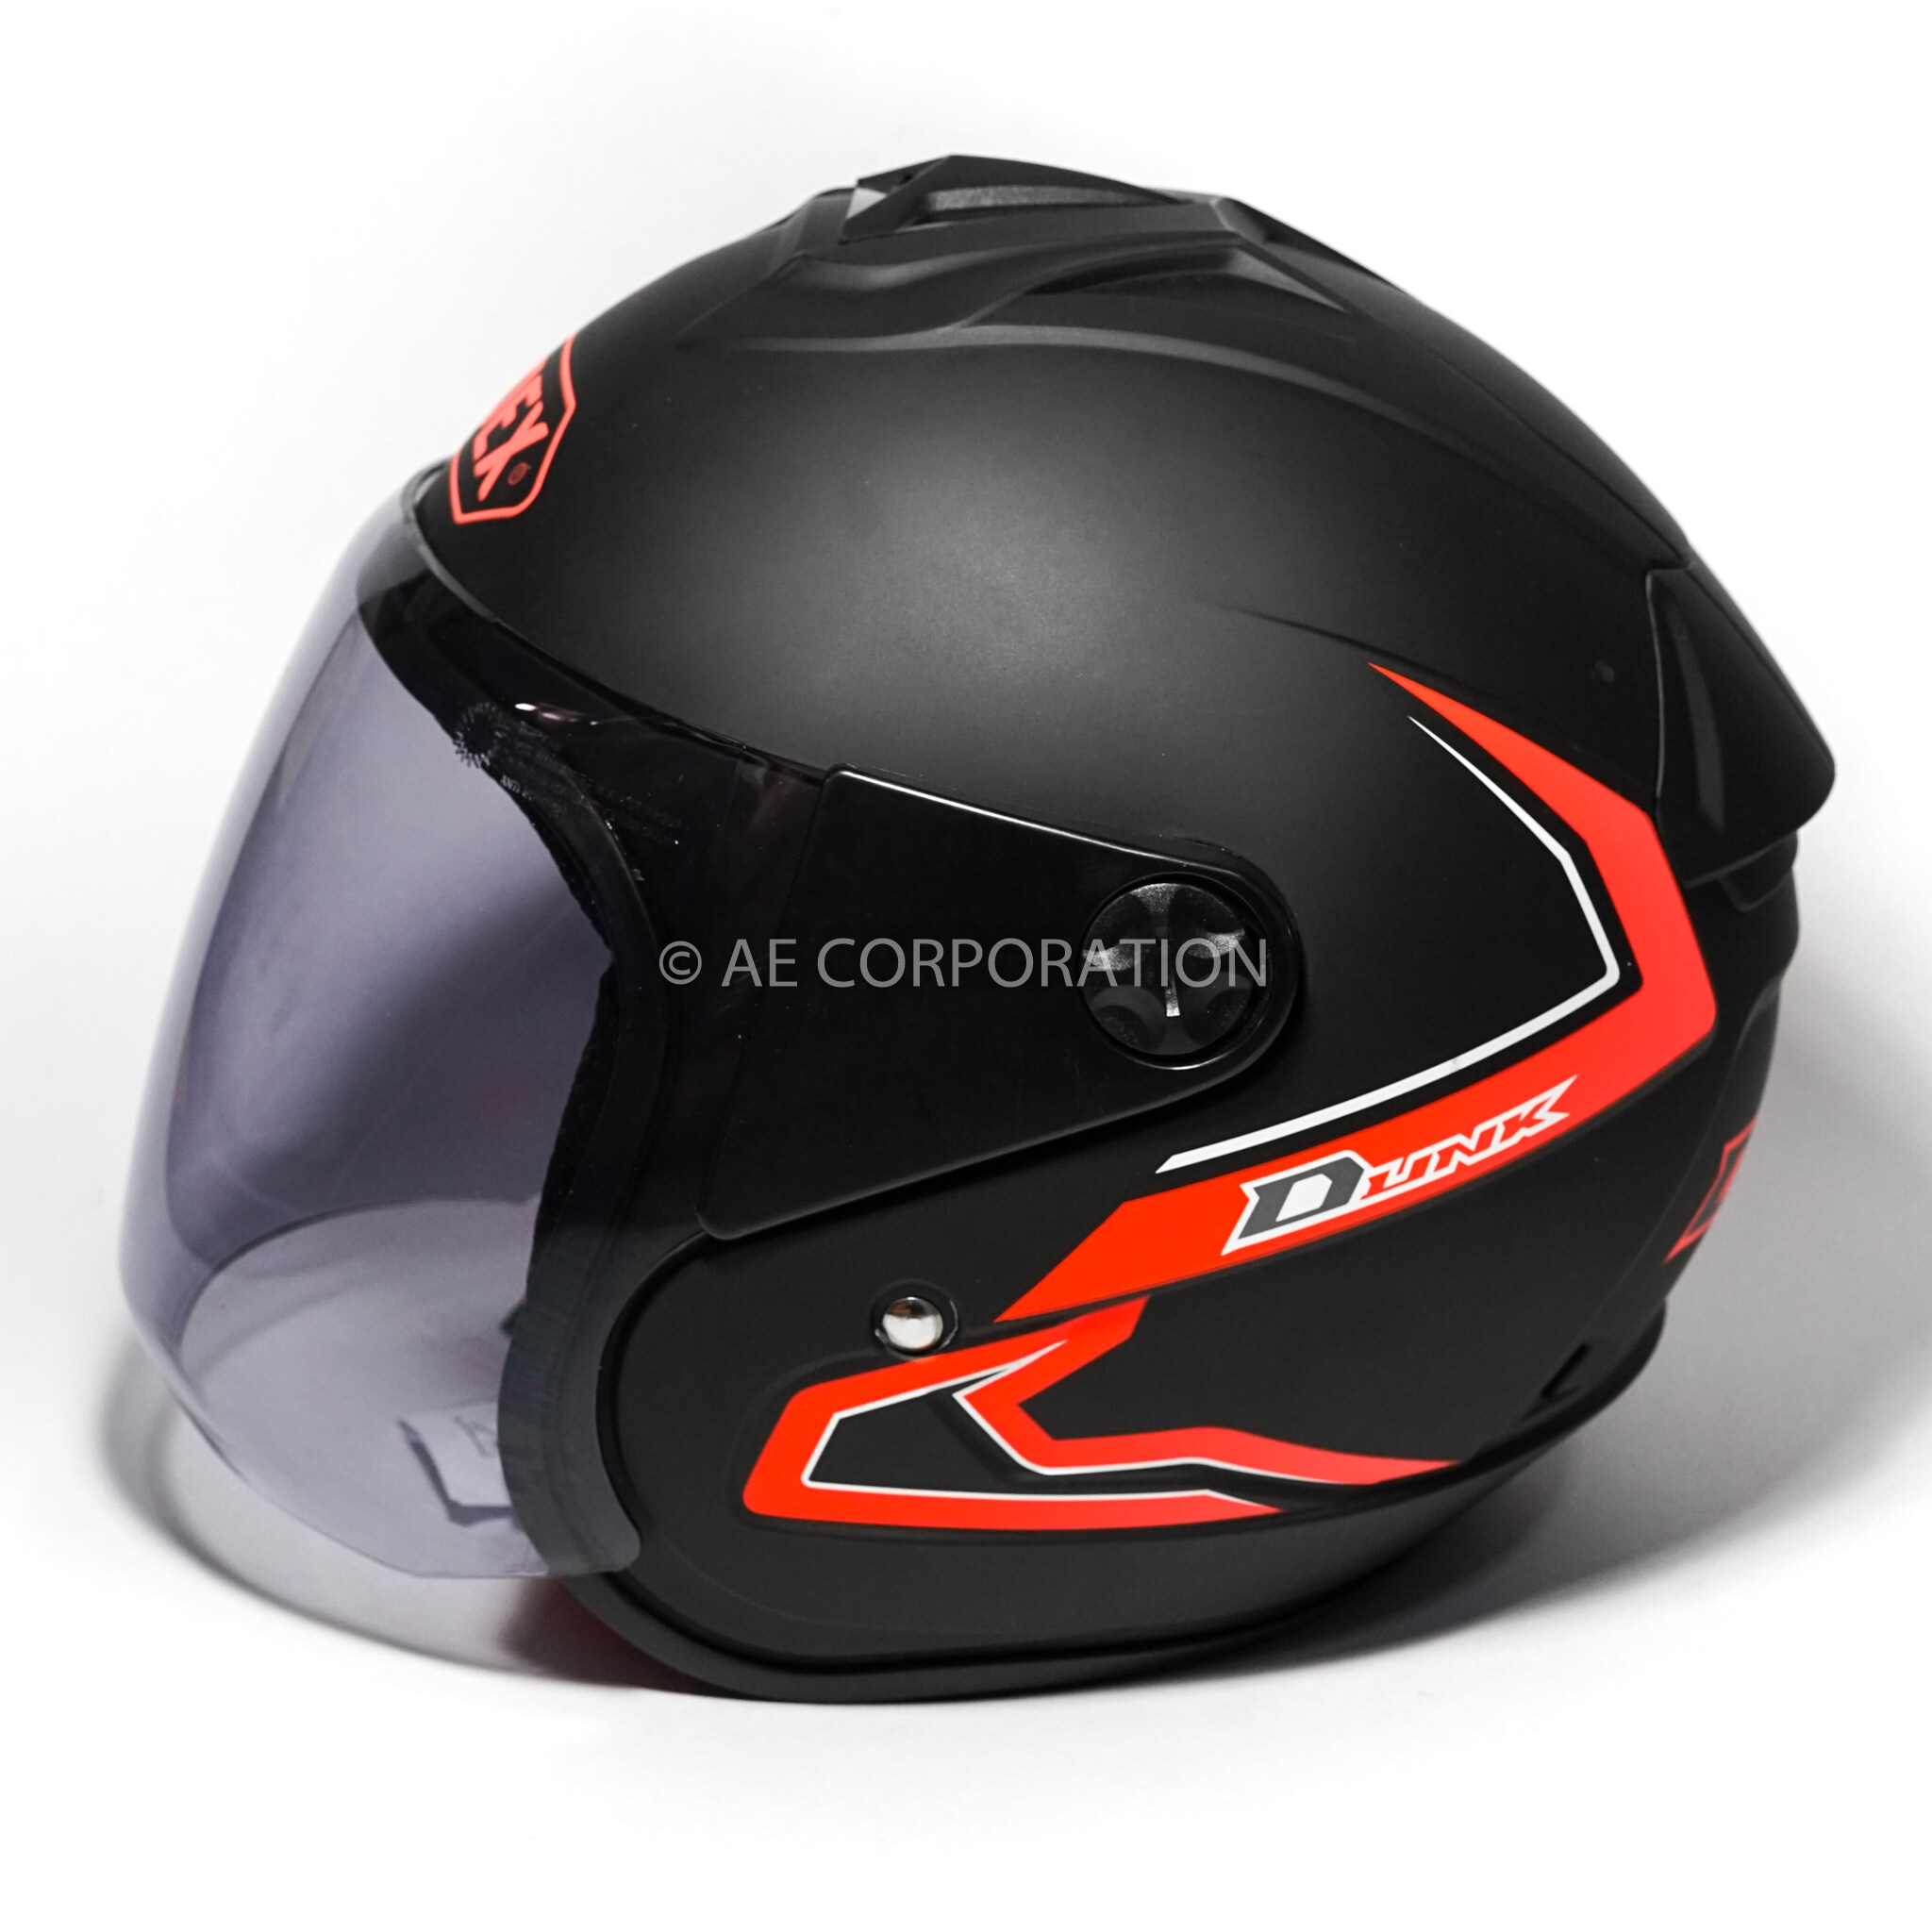 คำอธิบายเพิ่มเติมเกี่ยวกับ หมวกกันน็อค INDEX DUNK NEW หมวกกันน็อก ของแท้100% ไซต์L สีดำด้าน 300IQ Racing